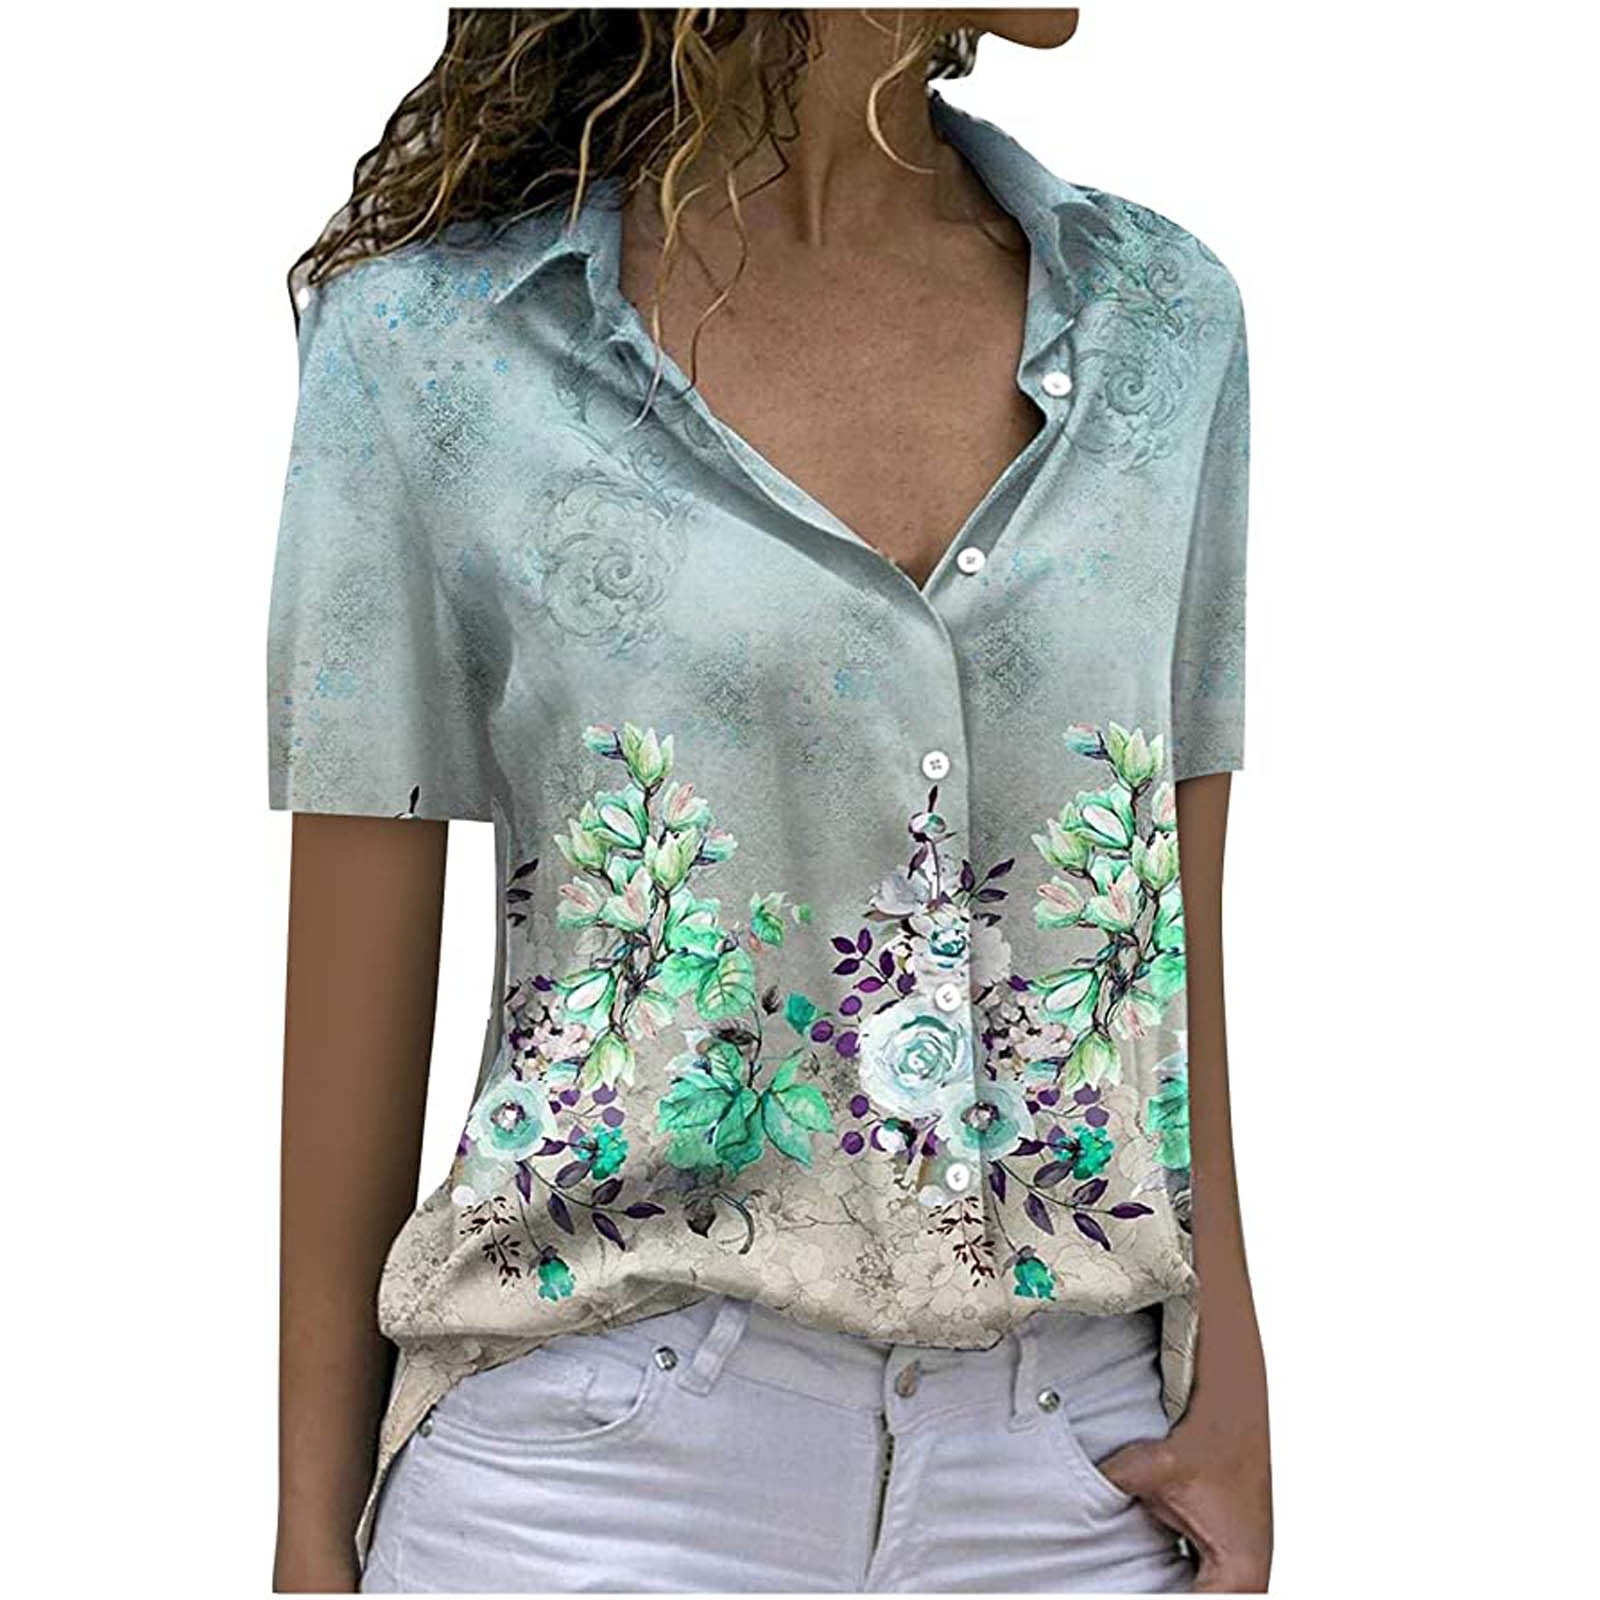 Button Down Shirt Women Short Sleeve V-Neck Lapel Floral Print Blouses ...